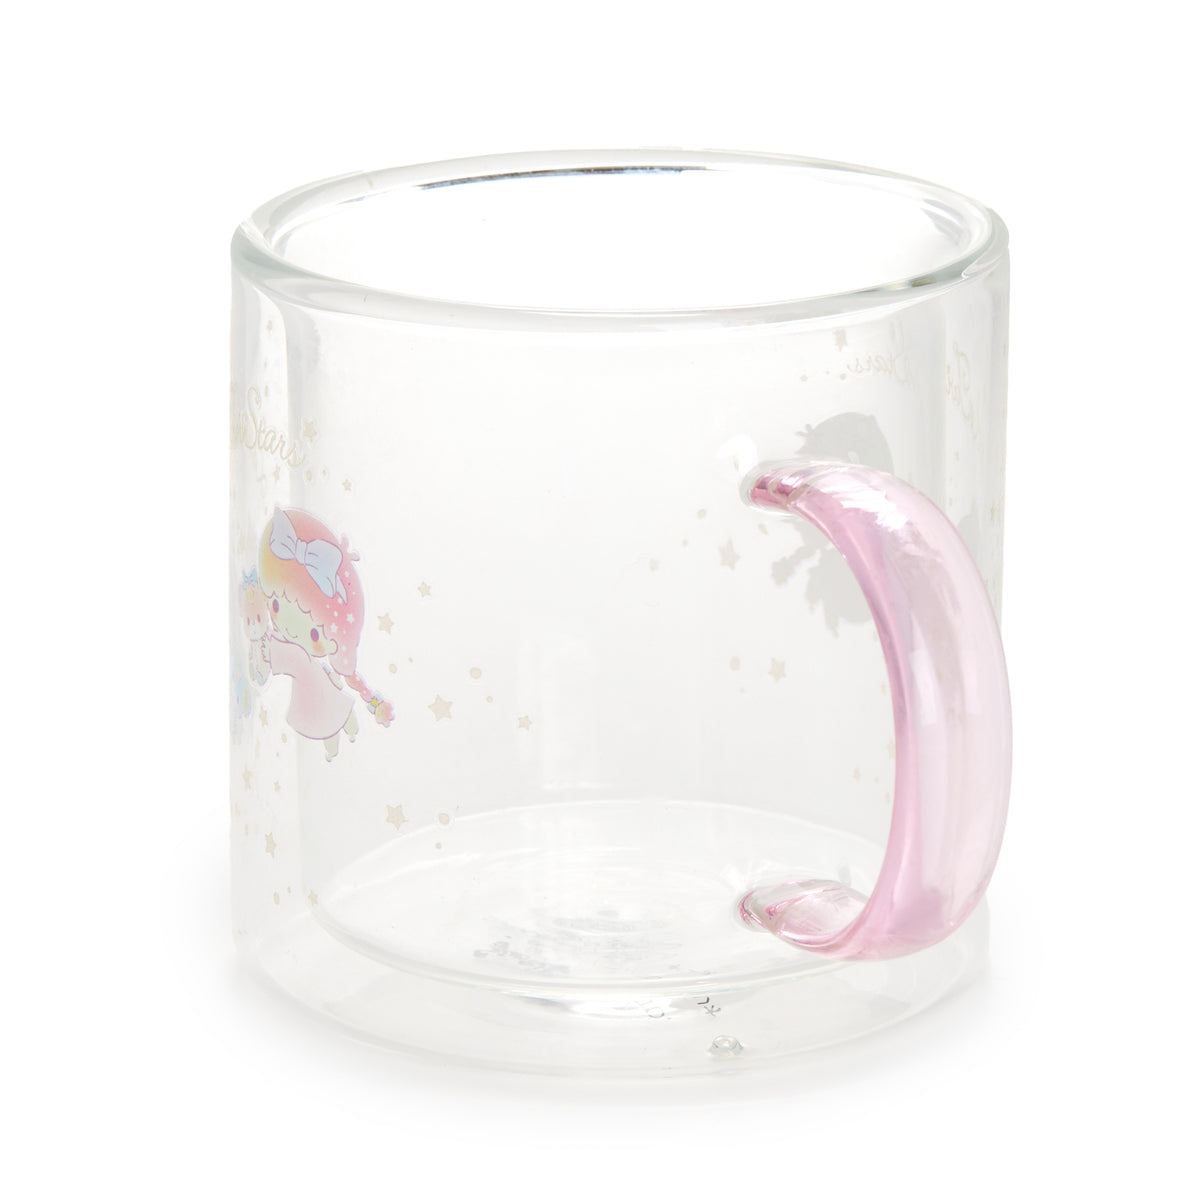 LittleTwinStars Glass Mug Home Goods Global Original   